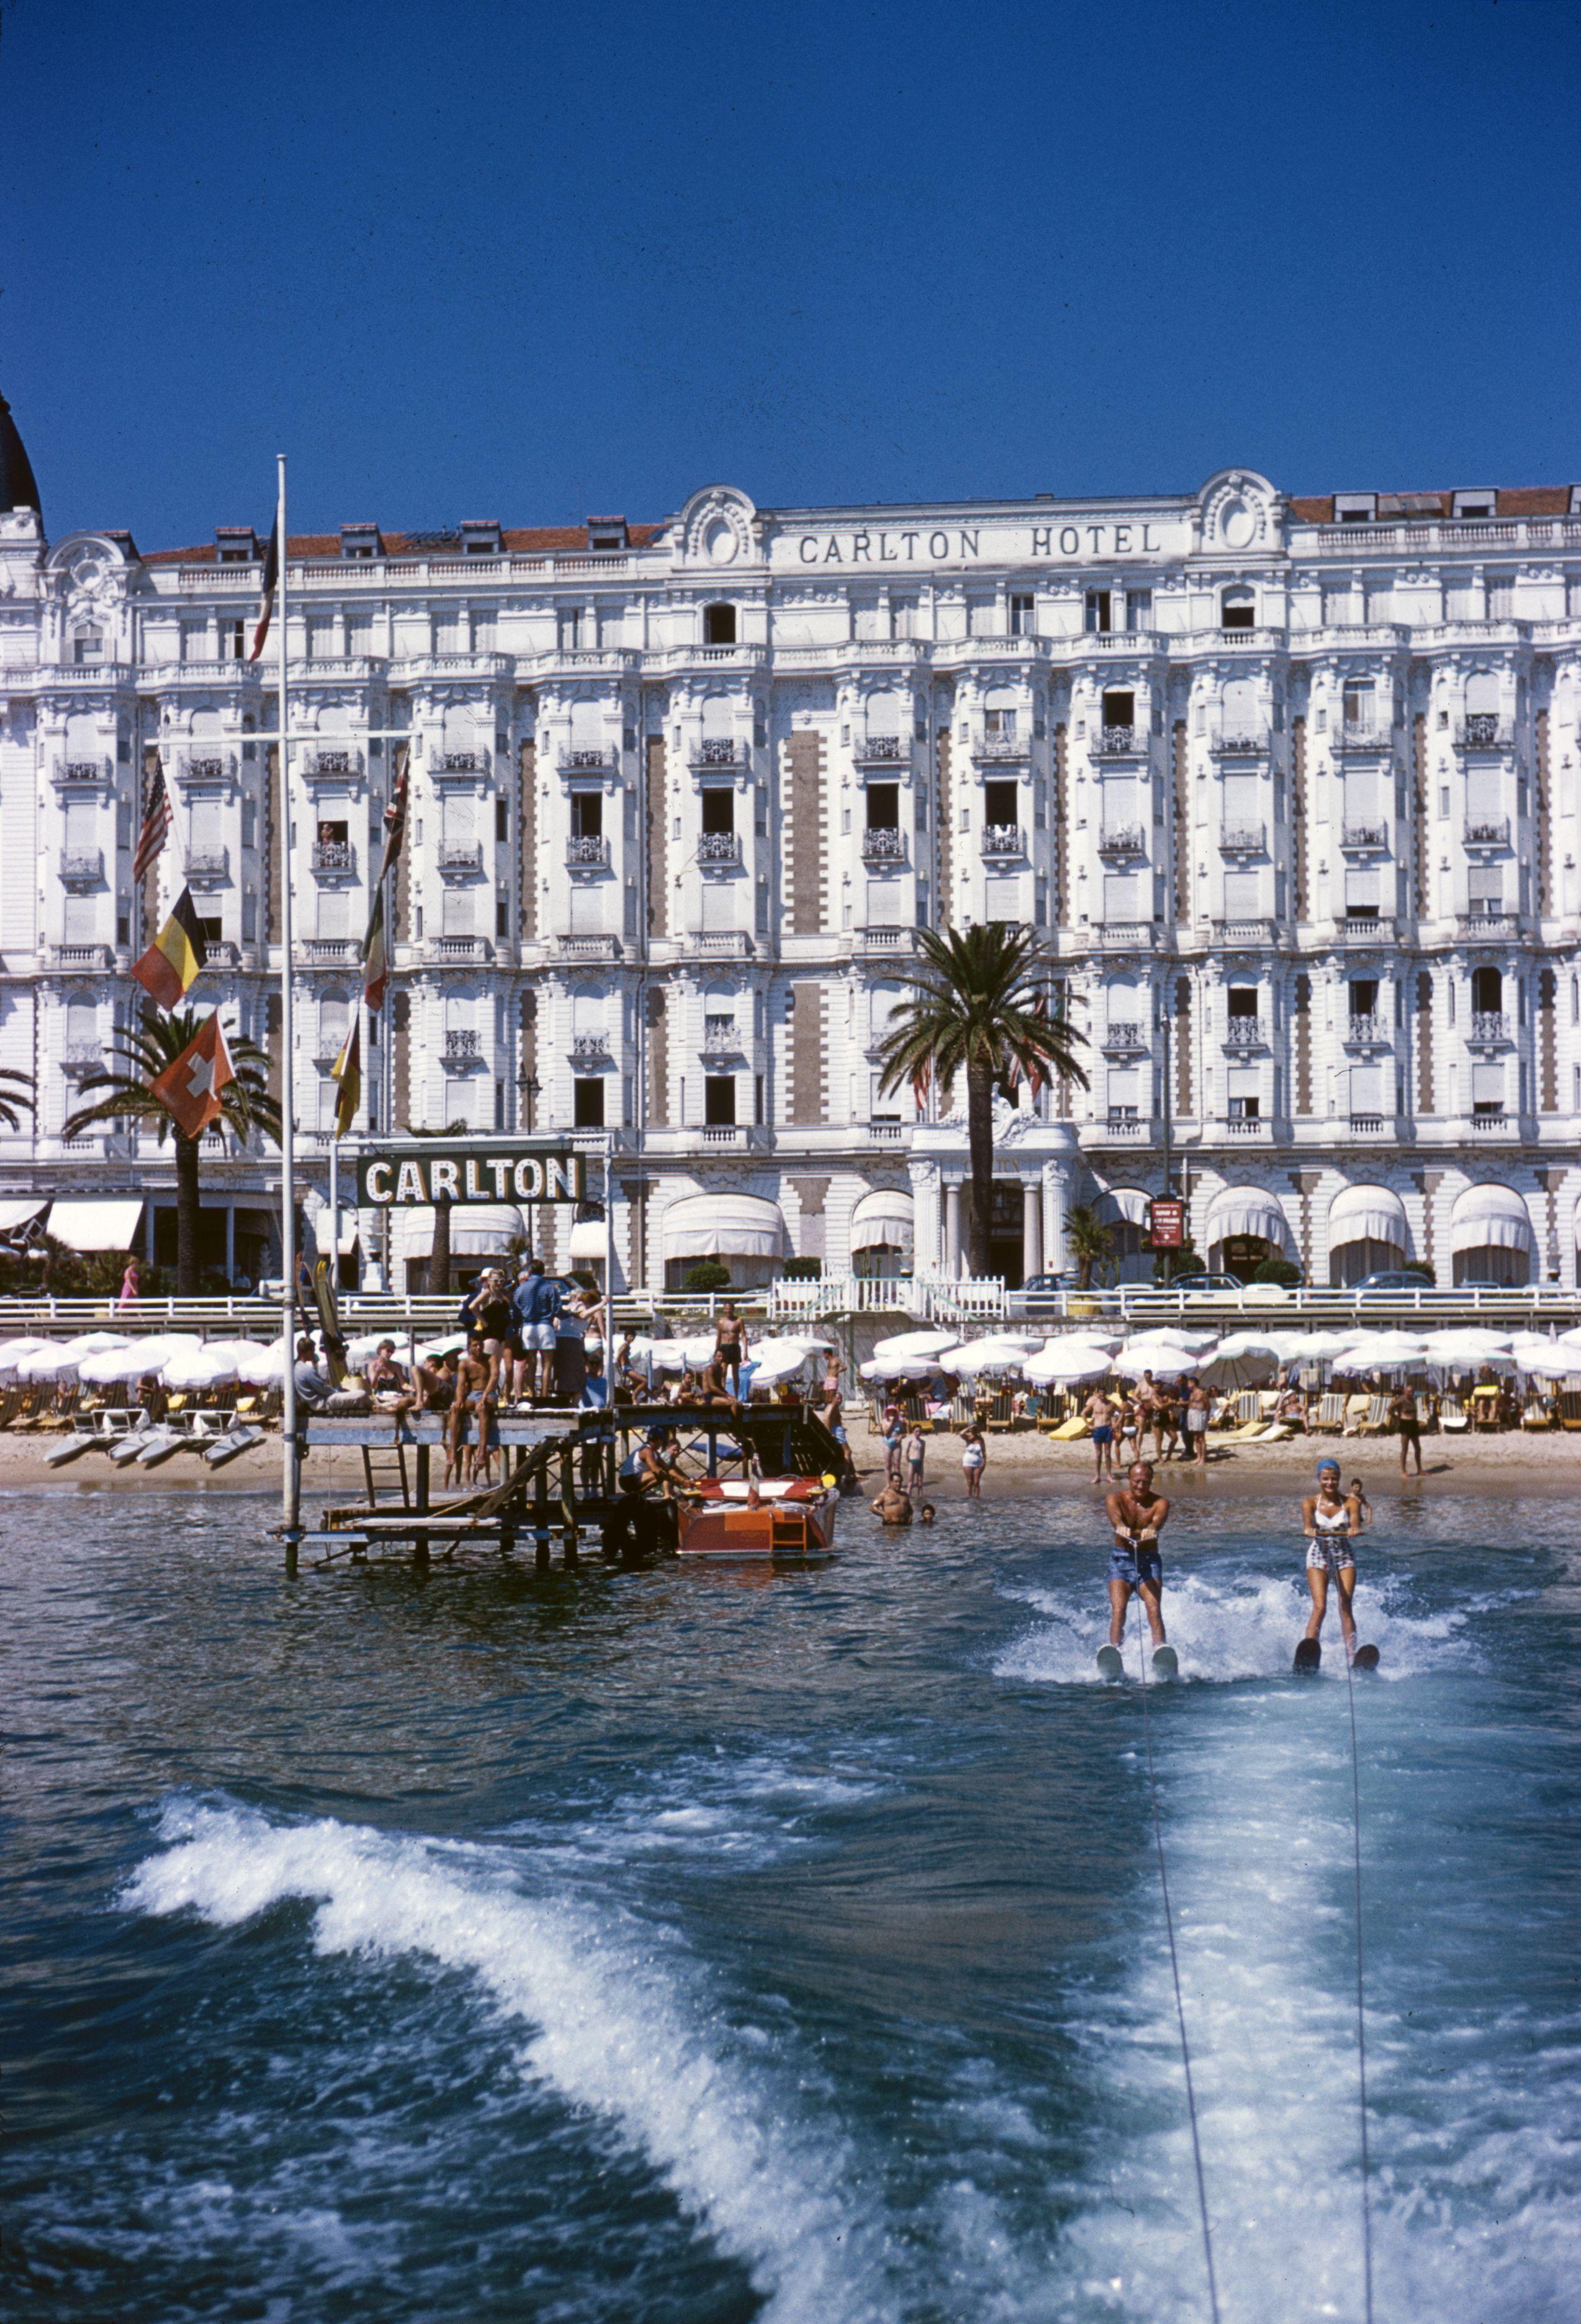 hotel Sports' 1958 Slim Aarons Limitierte Nachlassausgabe Druck 

1958: Urlauber beim Wasserskifahren vor dem Carlton Hotel in Cannes.

Hergestellt aus der Originalfolie
Mitgeliefertes Echtheitszertifikat 
Archiv gestempelt

Papierformat  24x20 Zoll